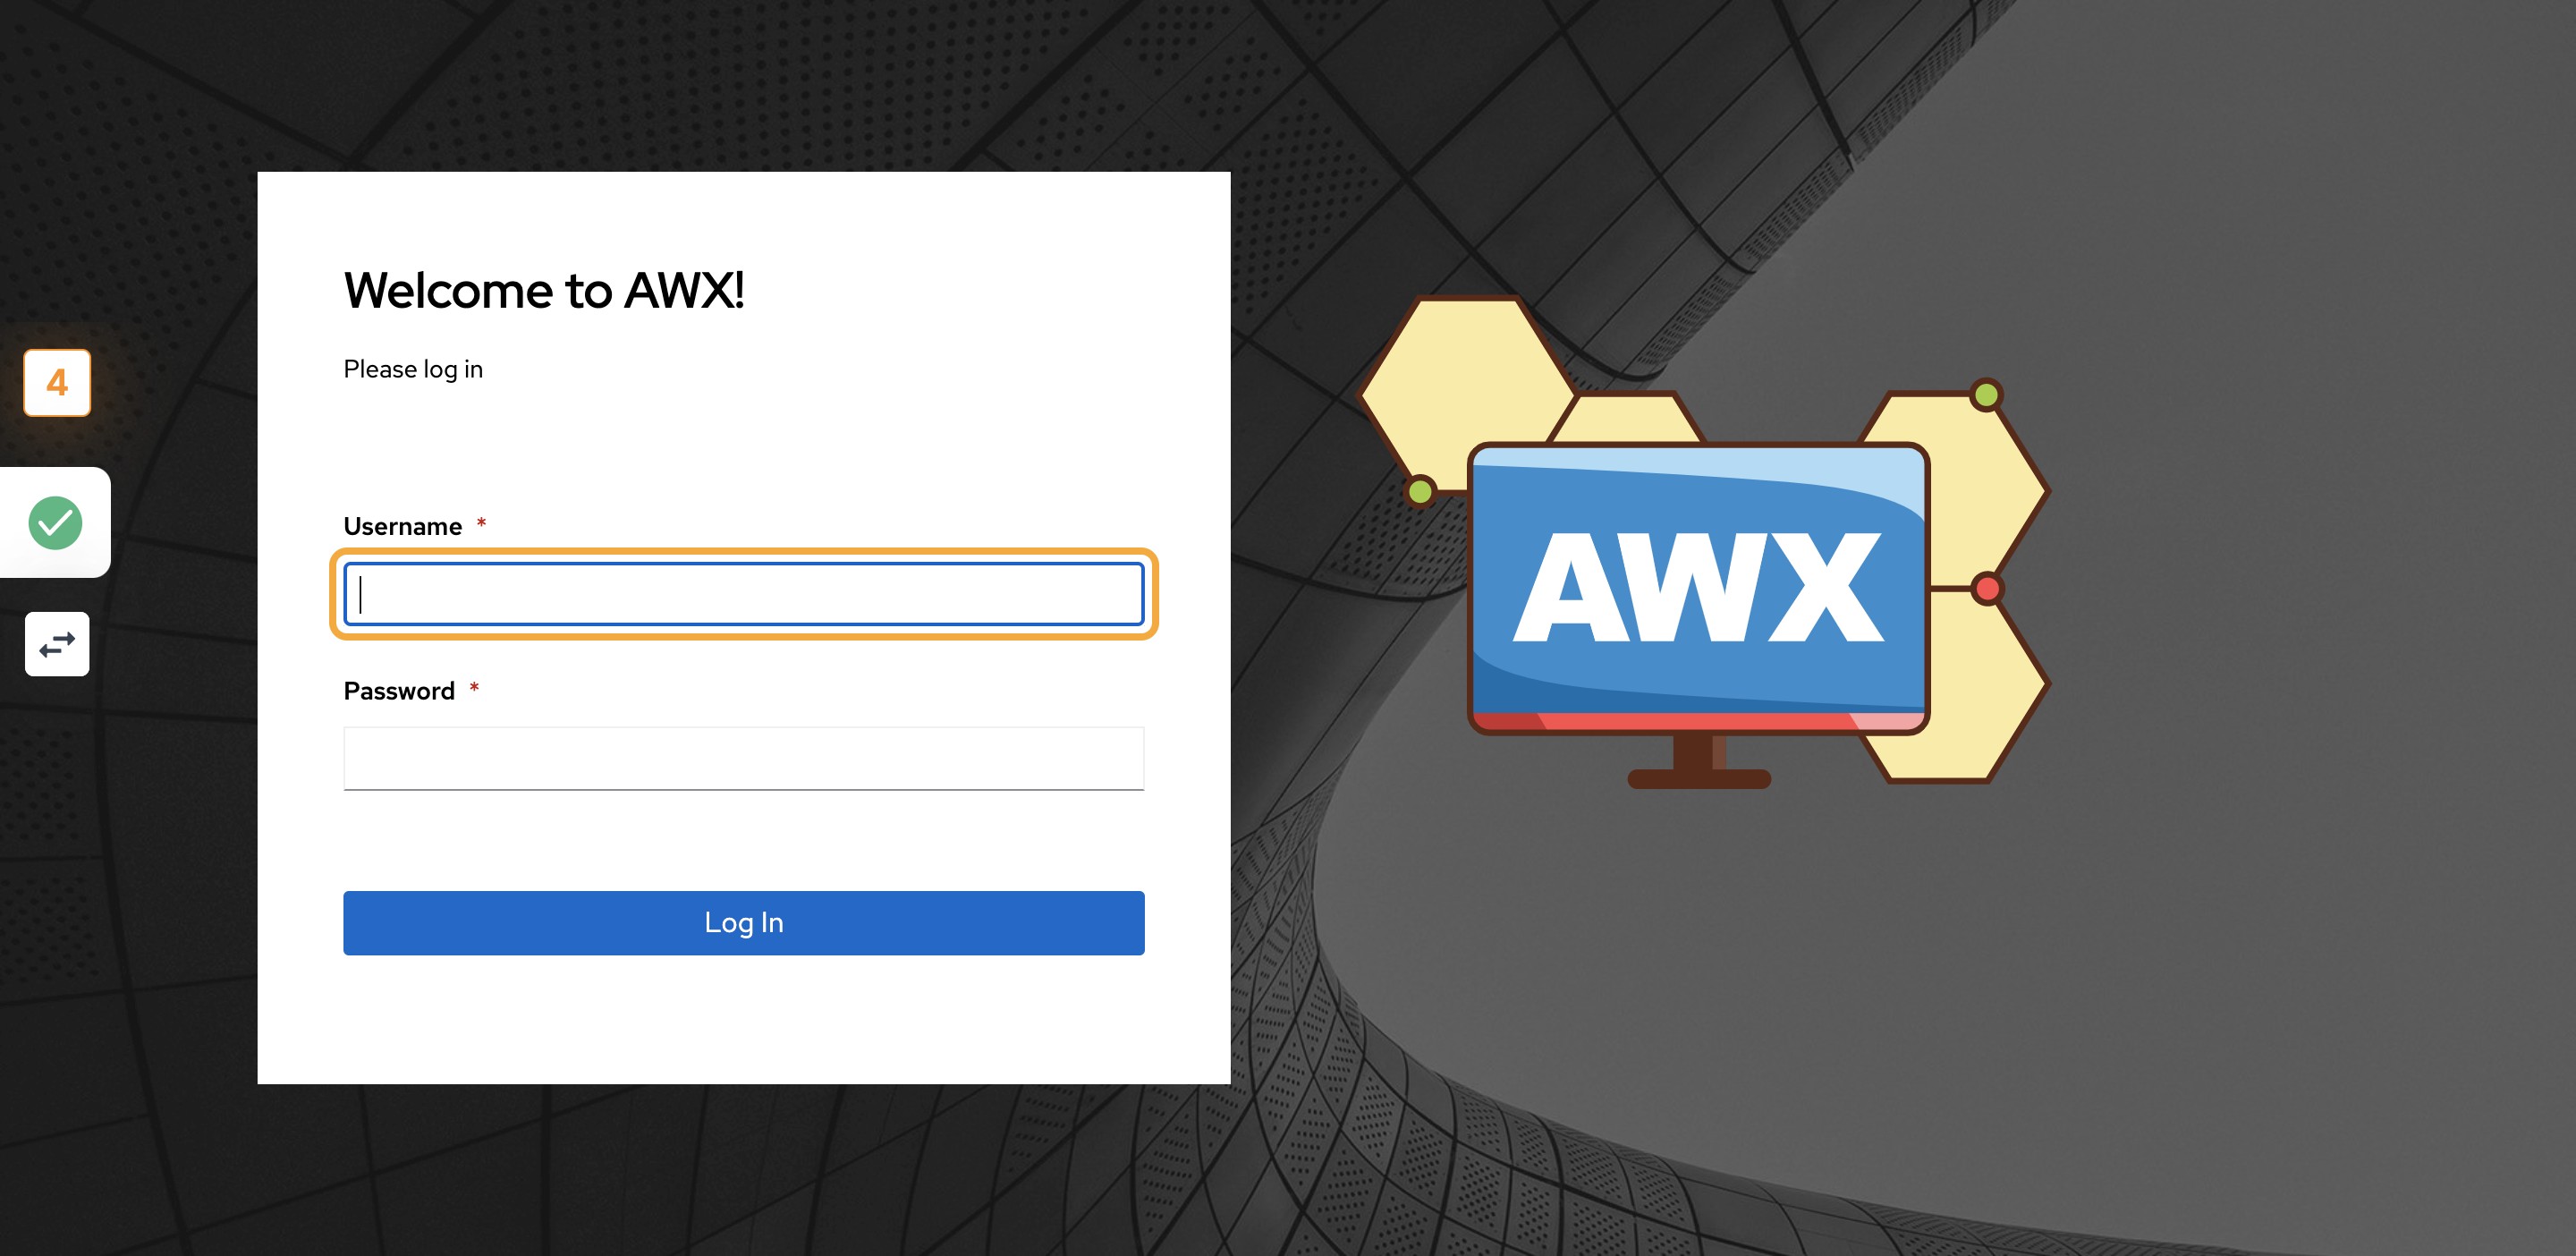 AWX_RMS_awx_login_page_4.png